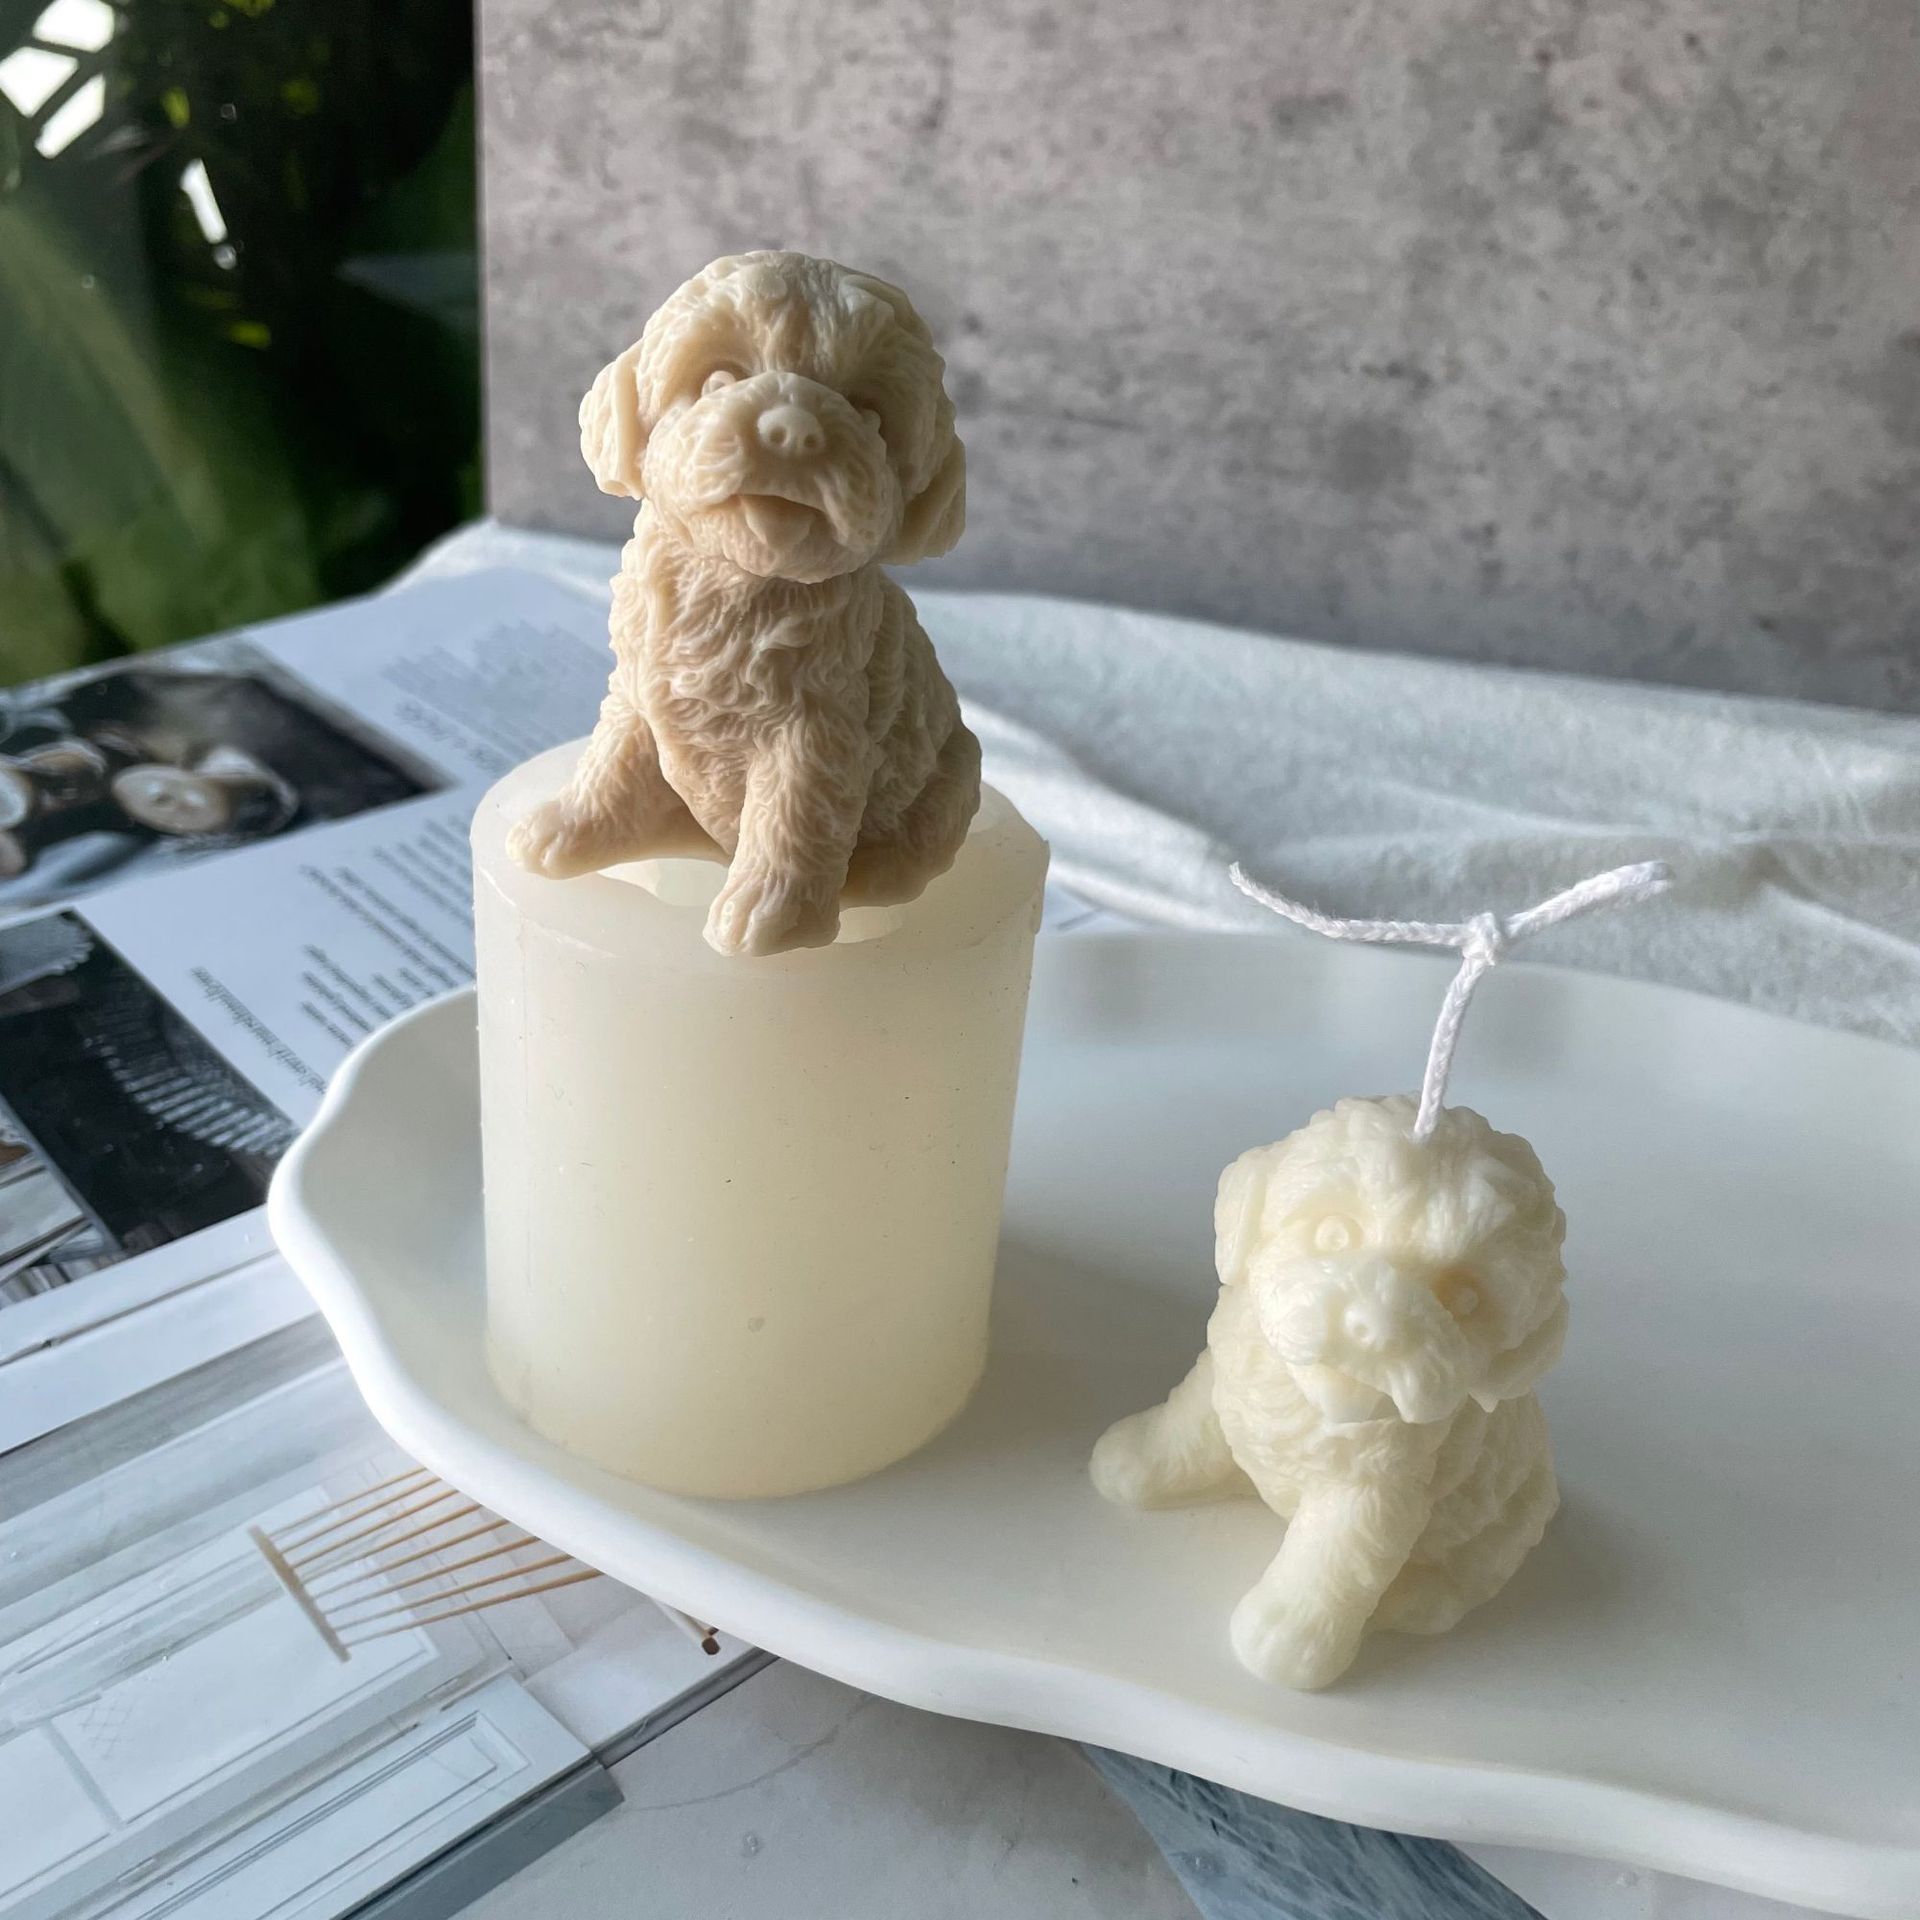 J1149 Motlle de silicona per a espelmes de cera 3D de bricolatge de sabó amb forma de gos.